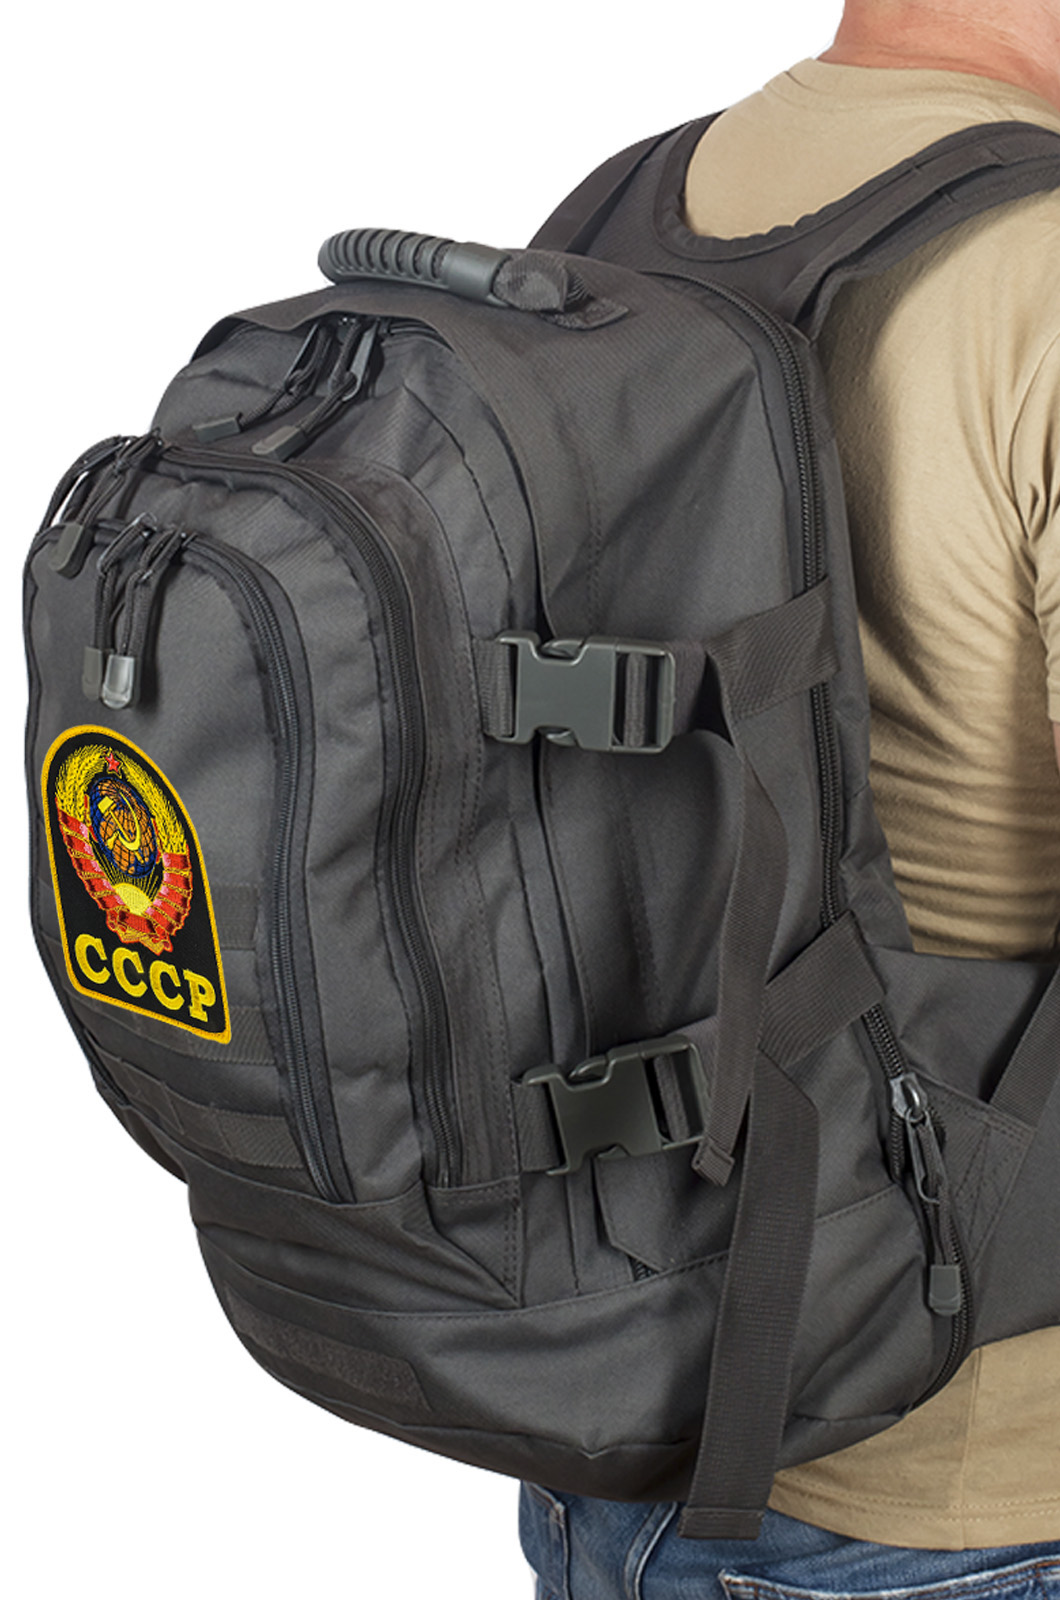 Универсальный рюкзак для города и полевых выходов 3-Day Expandable Backpack 08002A Dark Grey с эмблемой СССР купить в Военпро